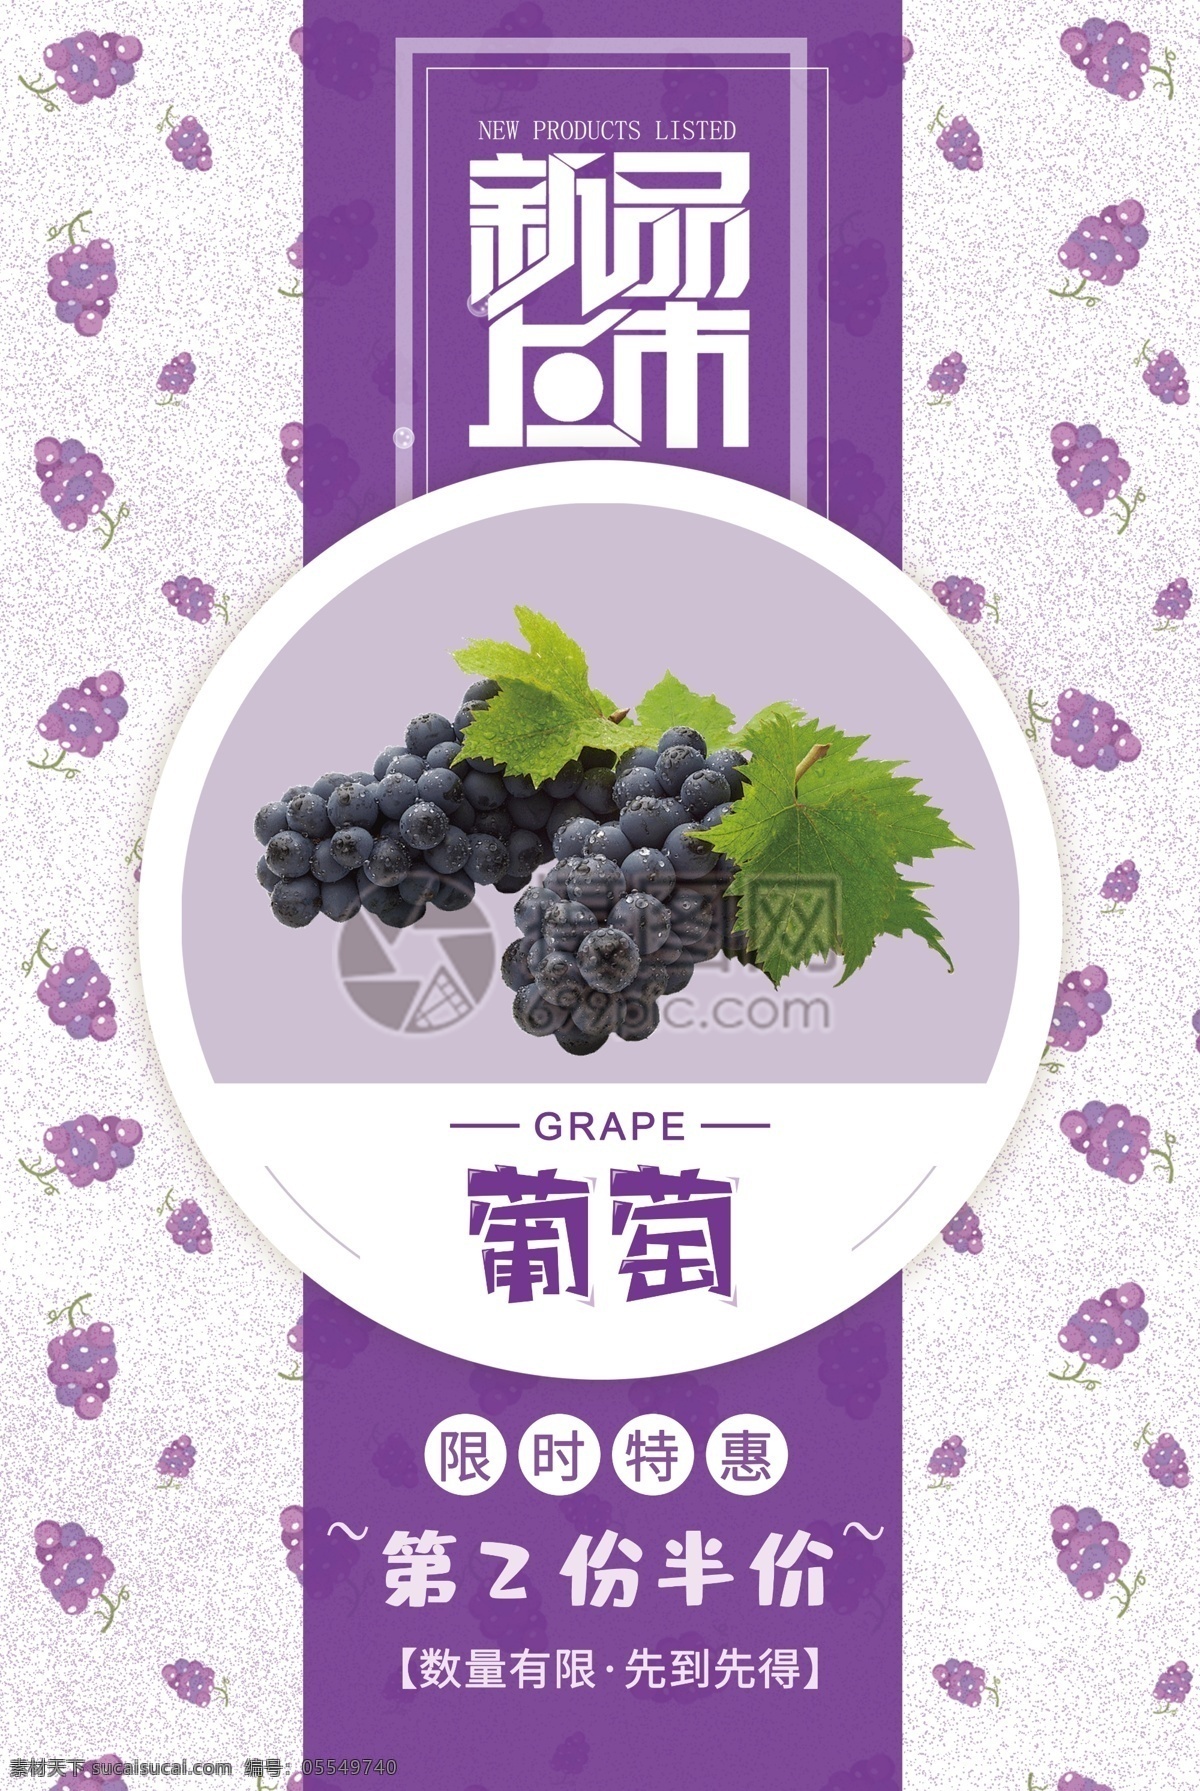 紫色 葡萄 促销 海报 新品上市 紫葡萄 水果上市 果蔬上新 时令水果 新鲜葡萄 提子